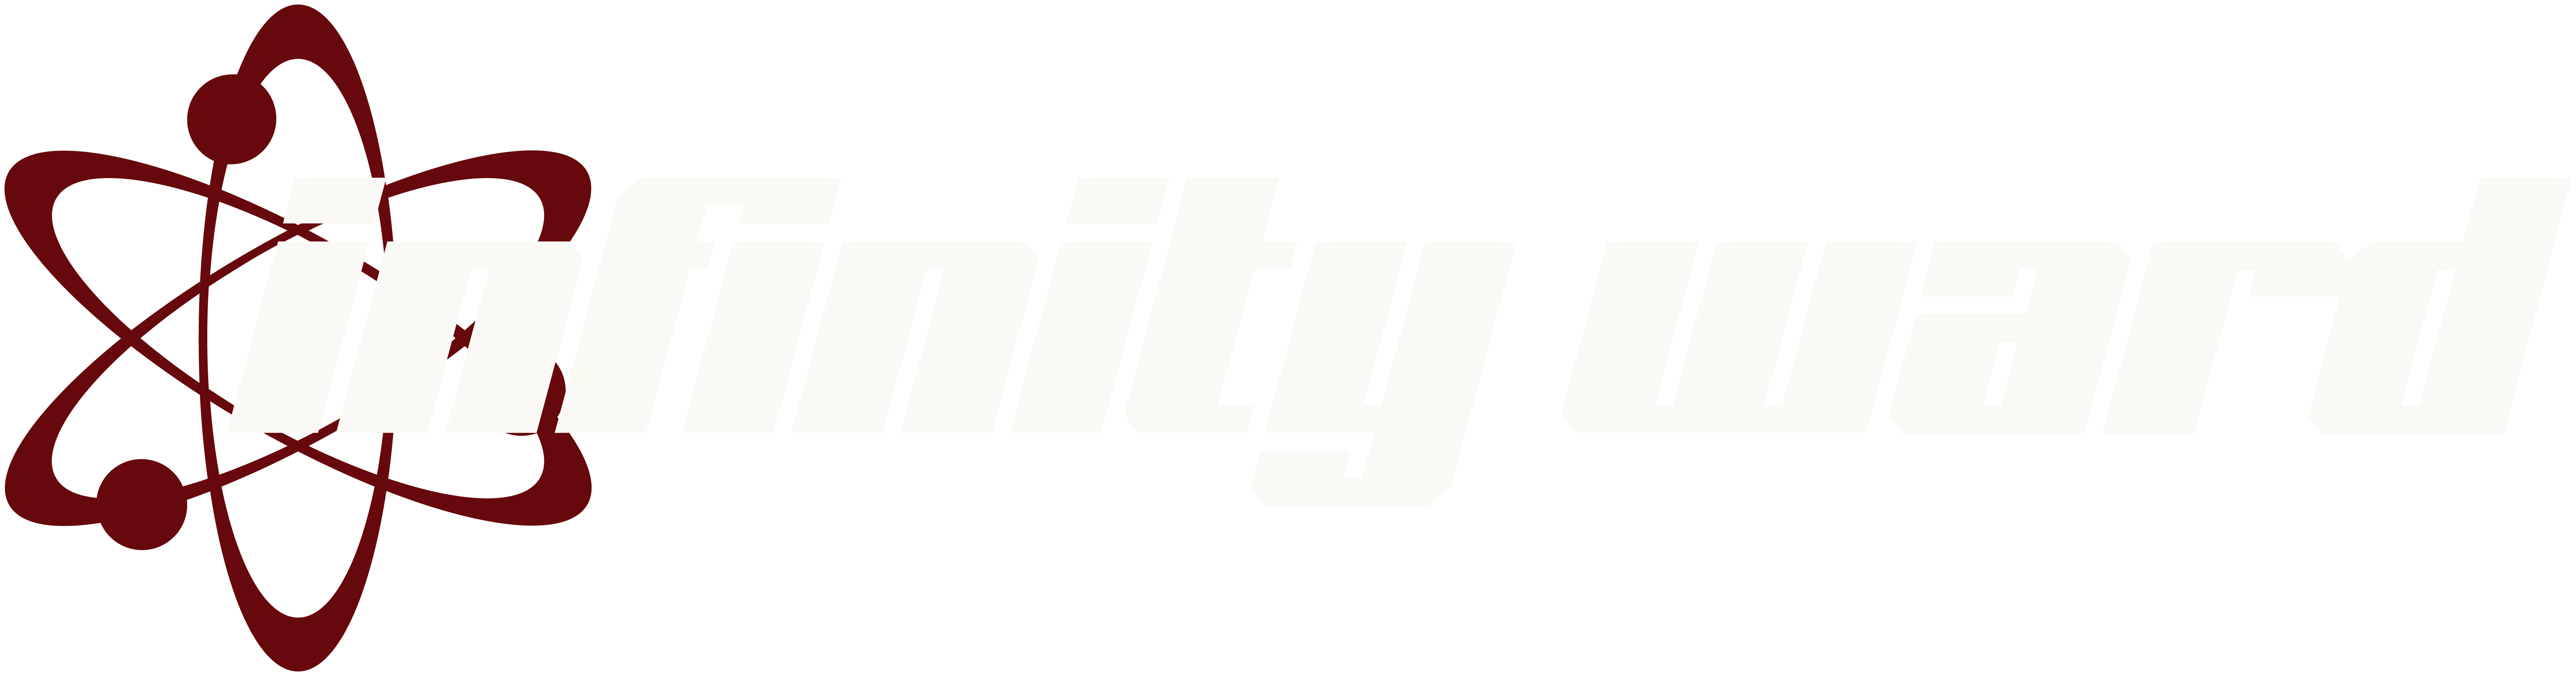 Infinity Ward logo.png